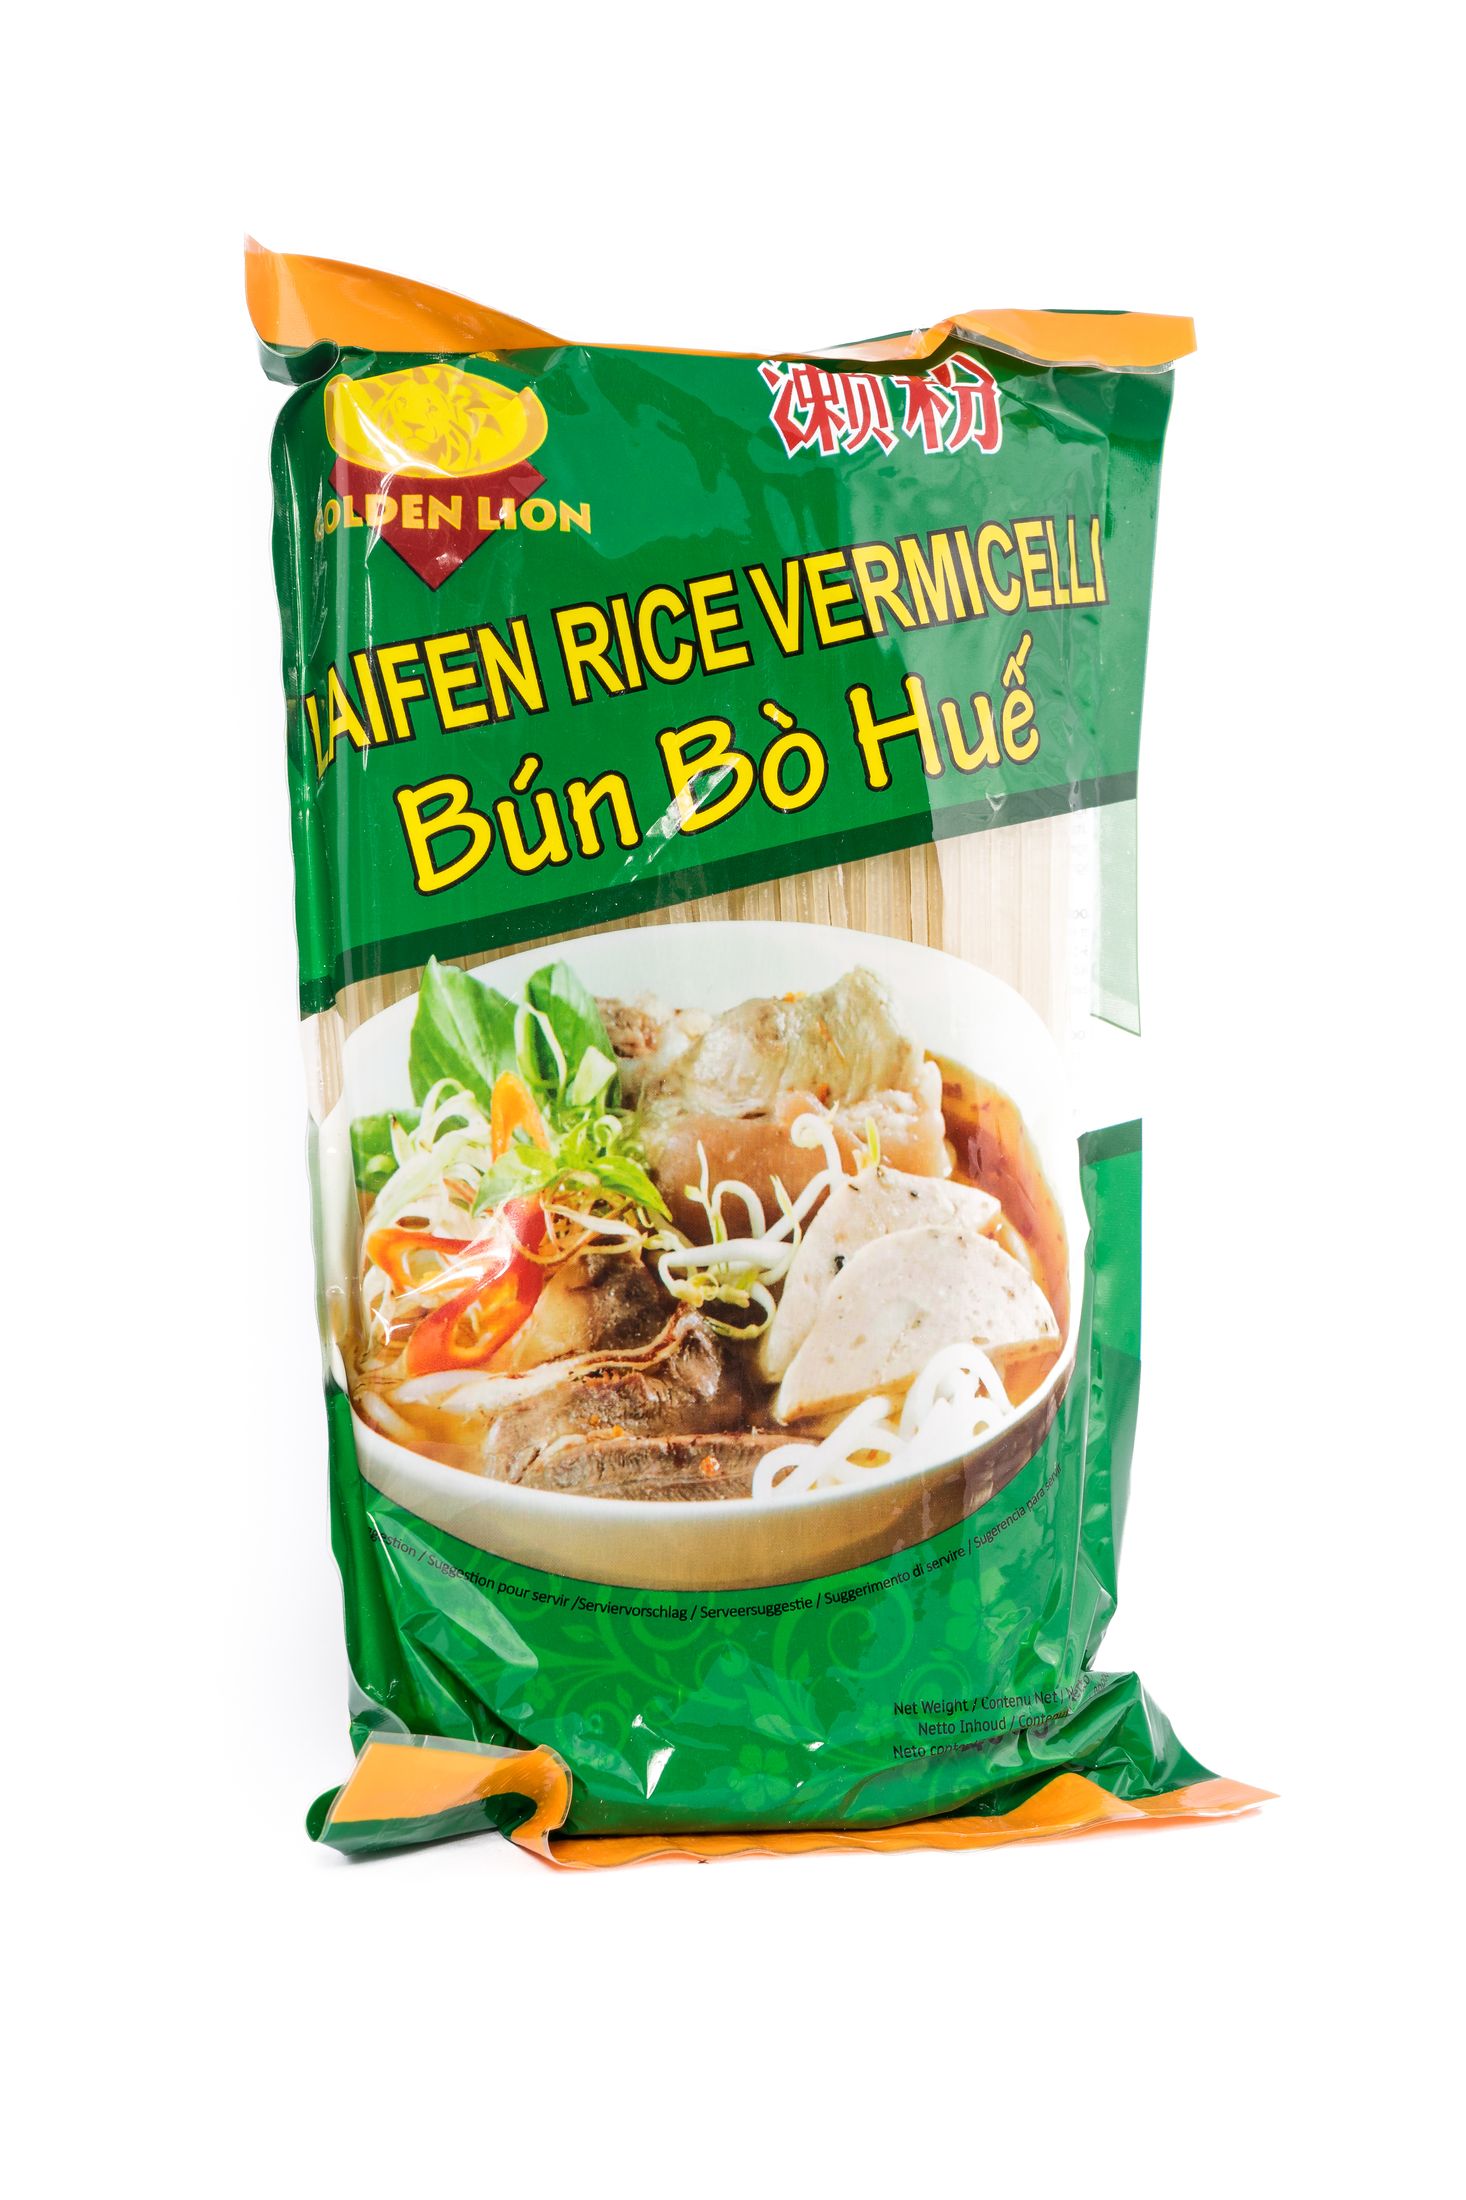 Golden Lion Rice vermicelli laifen bún bò Huế